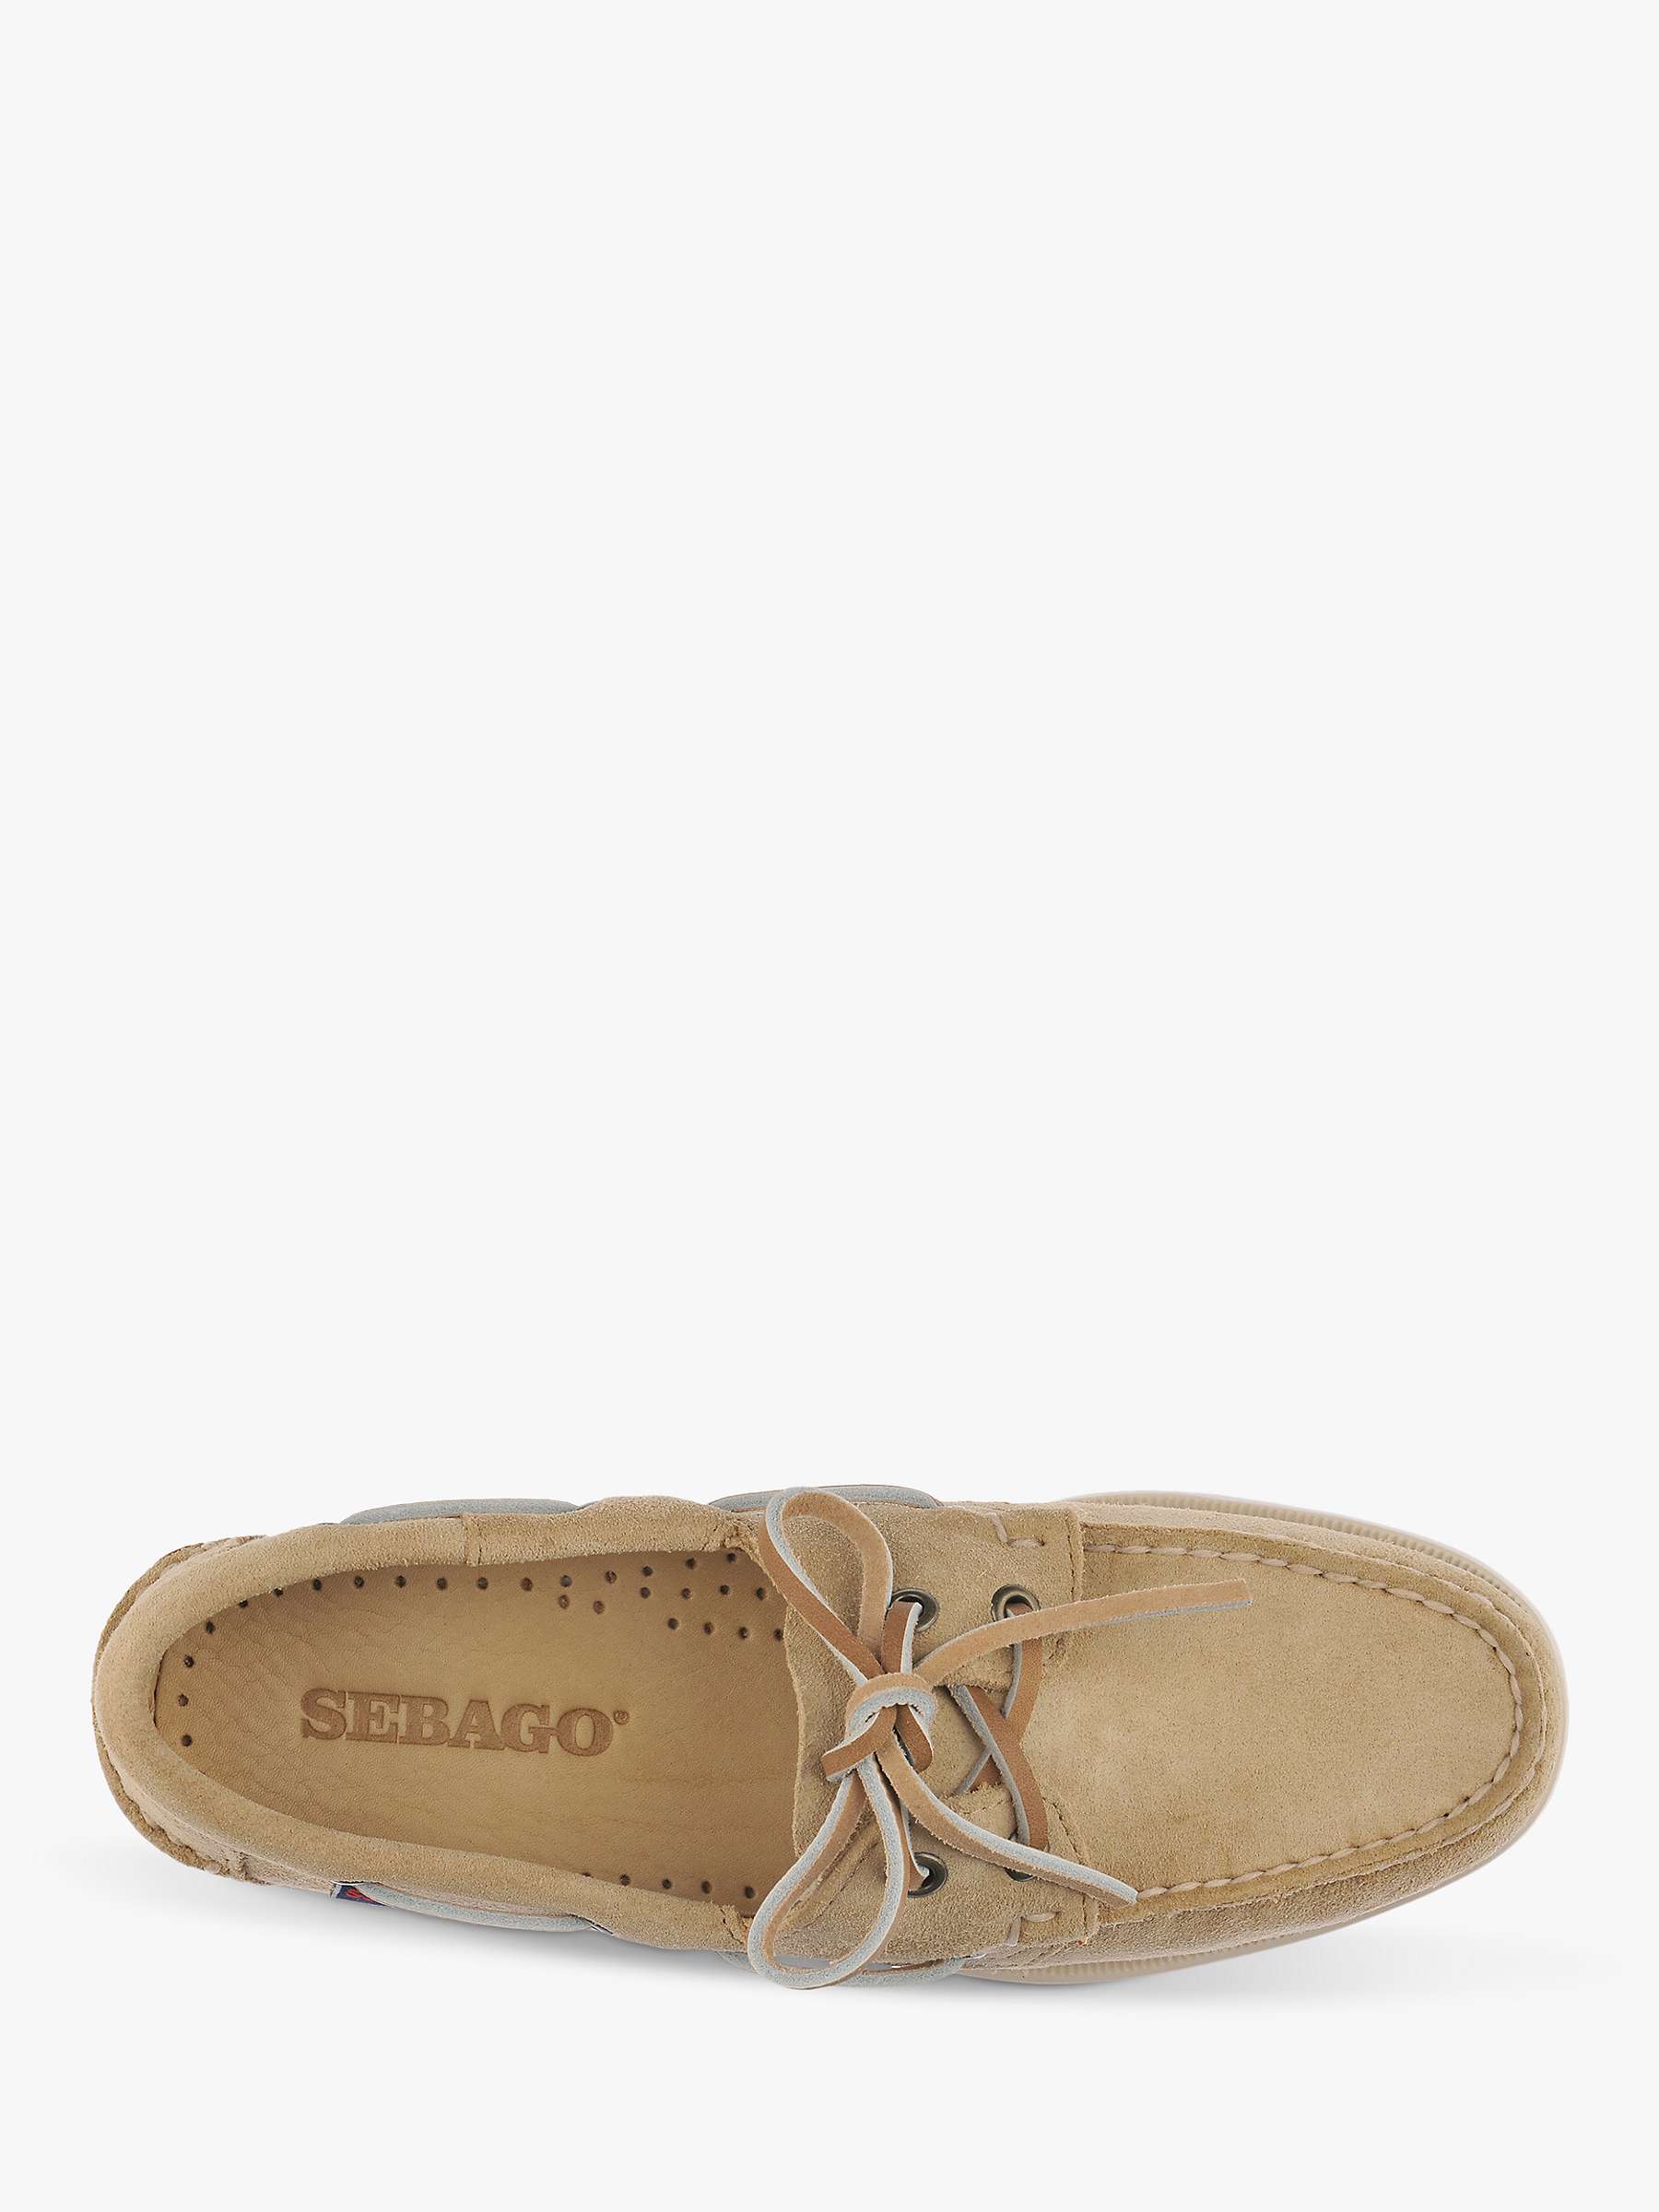 Buy Sebago Omega Open Back Leather Boat Shoes Online at johnlewis.com